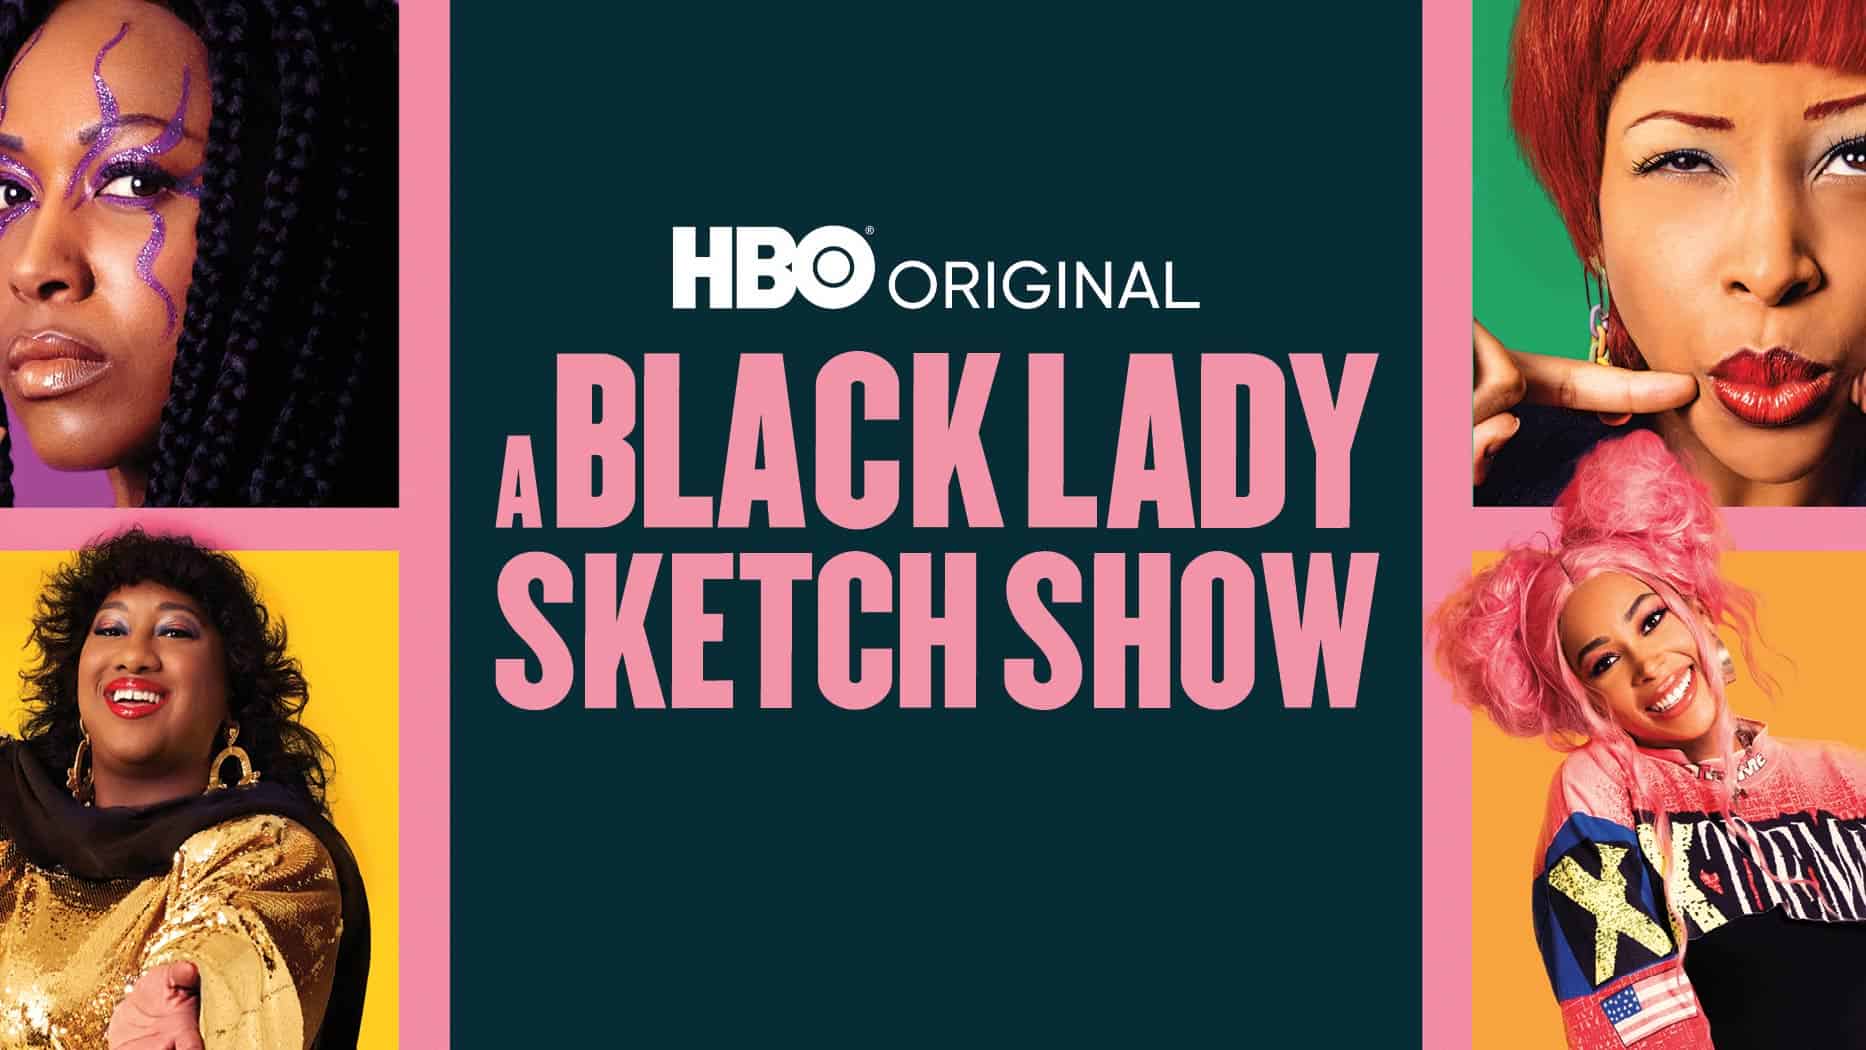 A Black Lady Sketch Show Sets Season 2 Premiere at HBO VIDEO